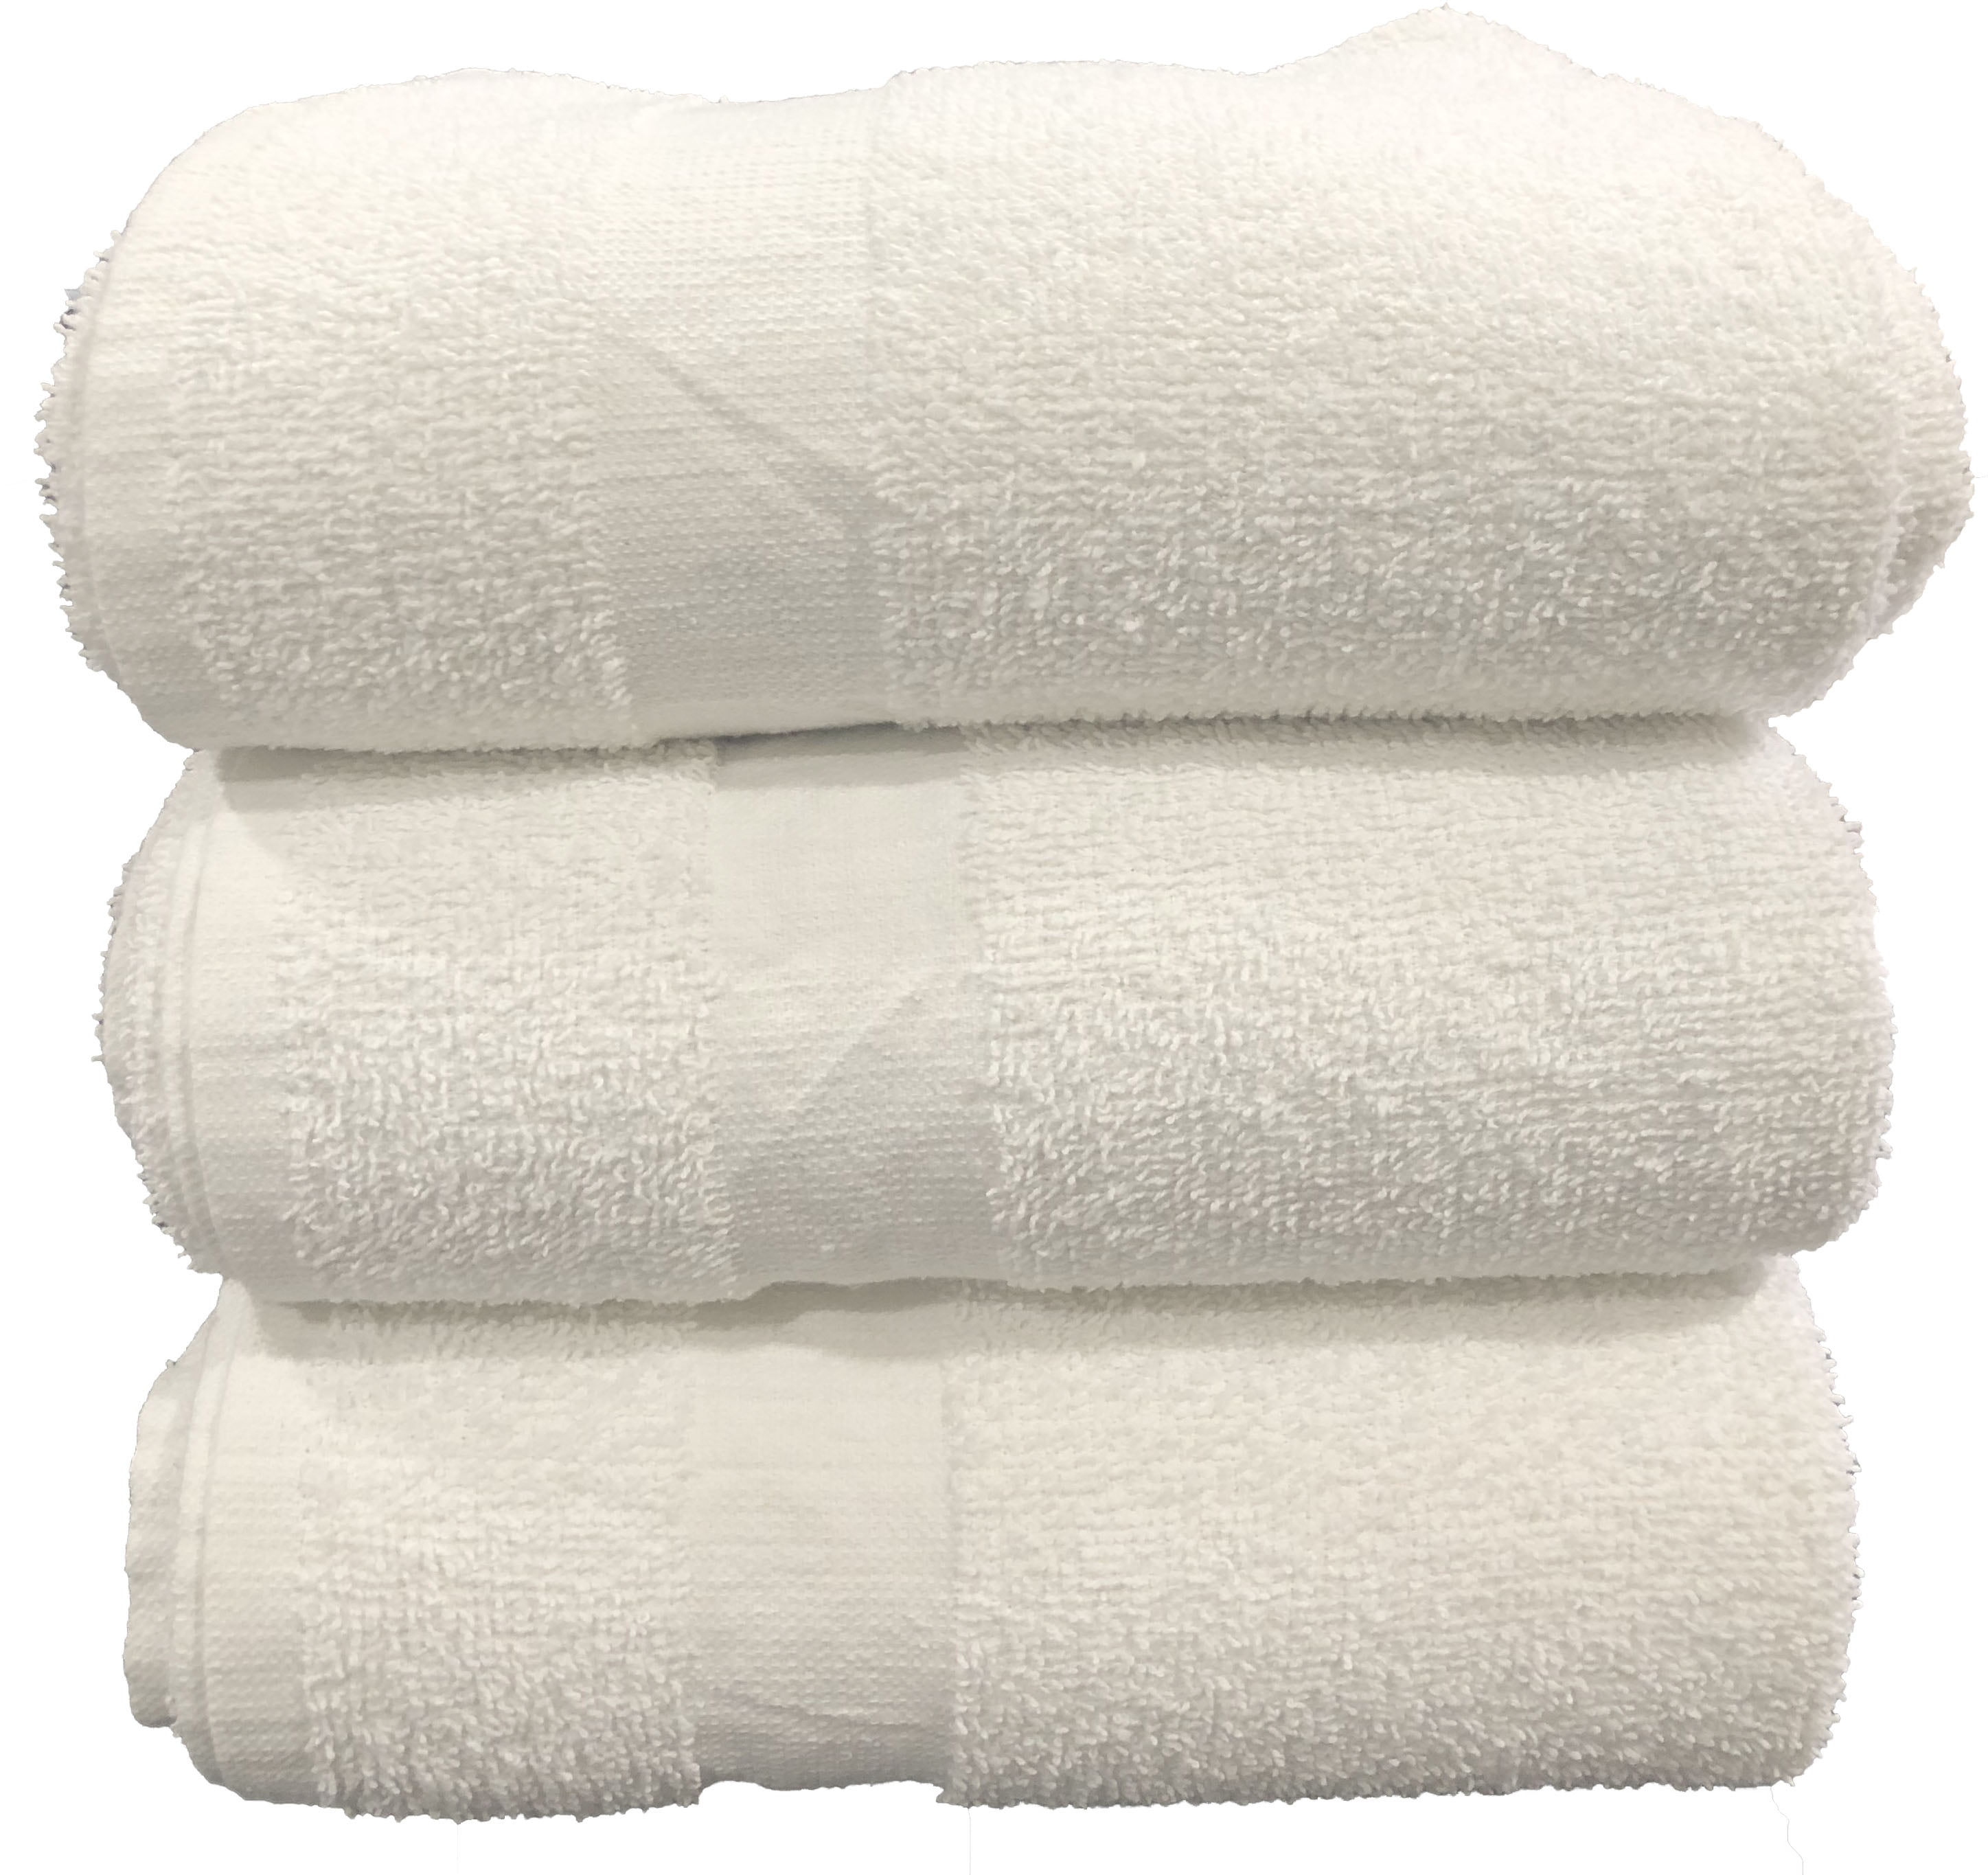 White Bathroom Wholesale 24x50 Cam Border Details about   Case of 60 Cotton Bath Towels 